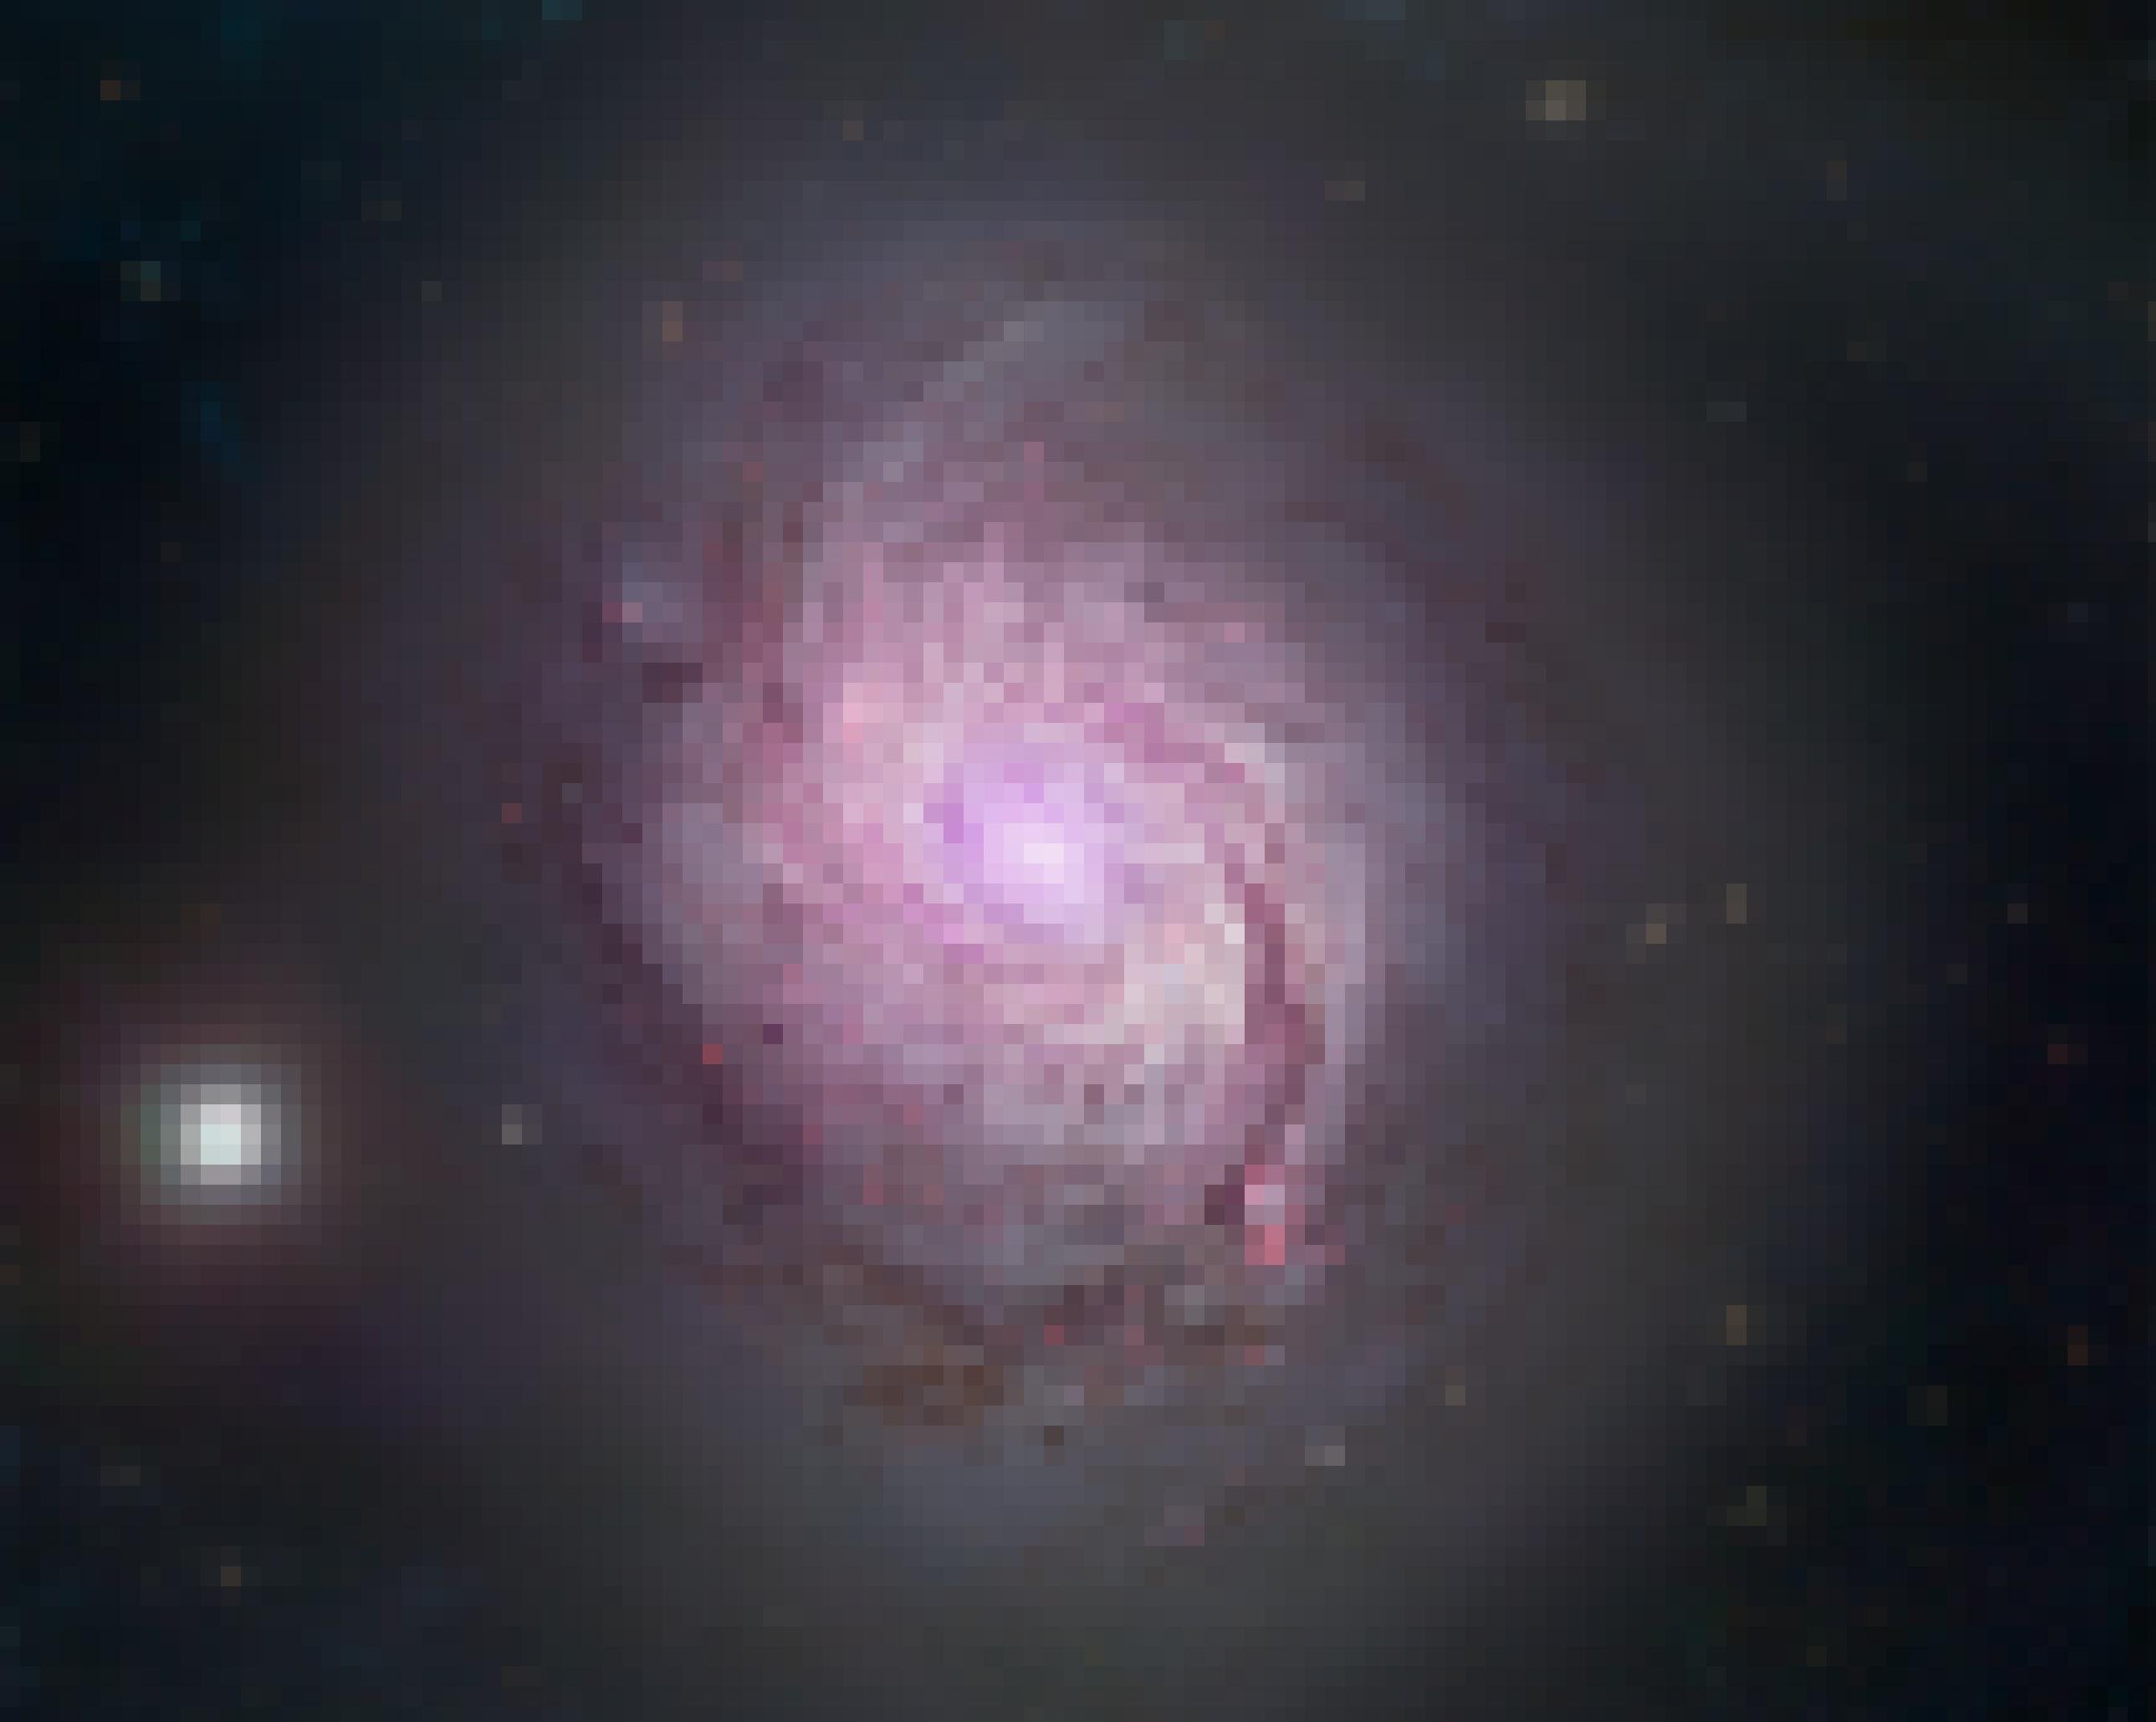 Zu sehen ist die Scheibe der Spiralgalaxie NGC 1068, die allerdings einen ungewöhnlichen Anblick bietet: Zu erkennen sind rotweiße, verwaschene Linien, die spiralförmig ins Zentrum des Sternsystems weisen. Es wirkt fast, als hätte jemand in einen riesigen Eimer weiße und rote Farbstreifen geschüttet und mit einem Quirl verwirbelt. Die Erklärung für das Bild des Spiralnebels: Forscher des Stratospheric Observatory for Infrared Astronomy (SOFIA) haben Messdaten der Magnetfelder der Galaxie über eine Aufnahme des Hubble-Weltraumteleskops projiziert. Das Bild lässt erkennen, dass die Magnetfelder insbesondere parallel zu jenen Bereichen der Spiralarme verlaufen, die reich an Staub, Gas und neugeborenen Sternen sind. Für die Wissenschaftler ist dadurch wahrscheinlich: Es sind Gravitationskräfte, die die Magnetfelder zusammenpressen und damit auch die Form der Spiralarme bstimmen.